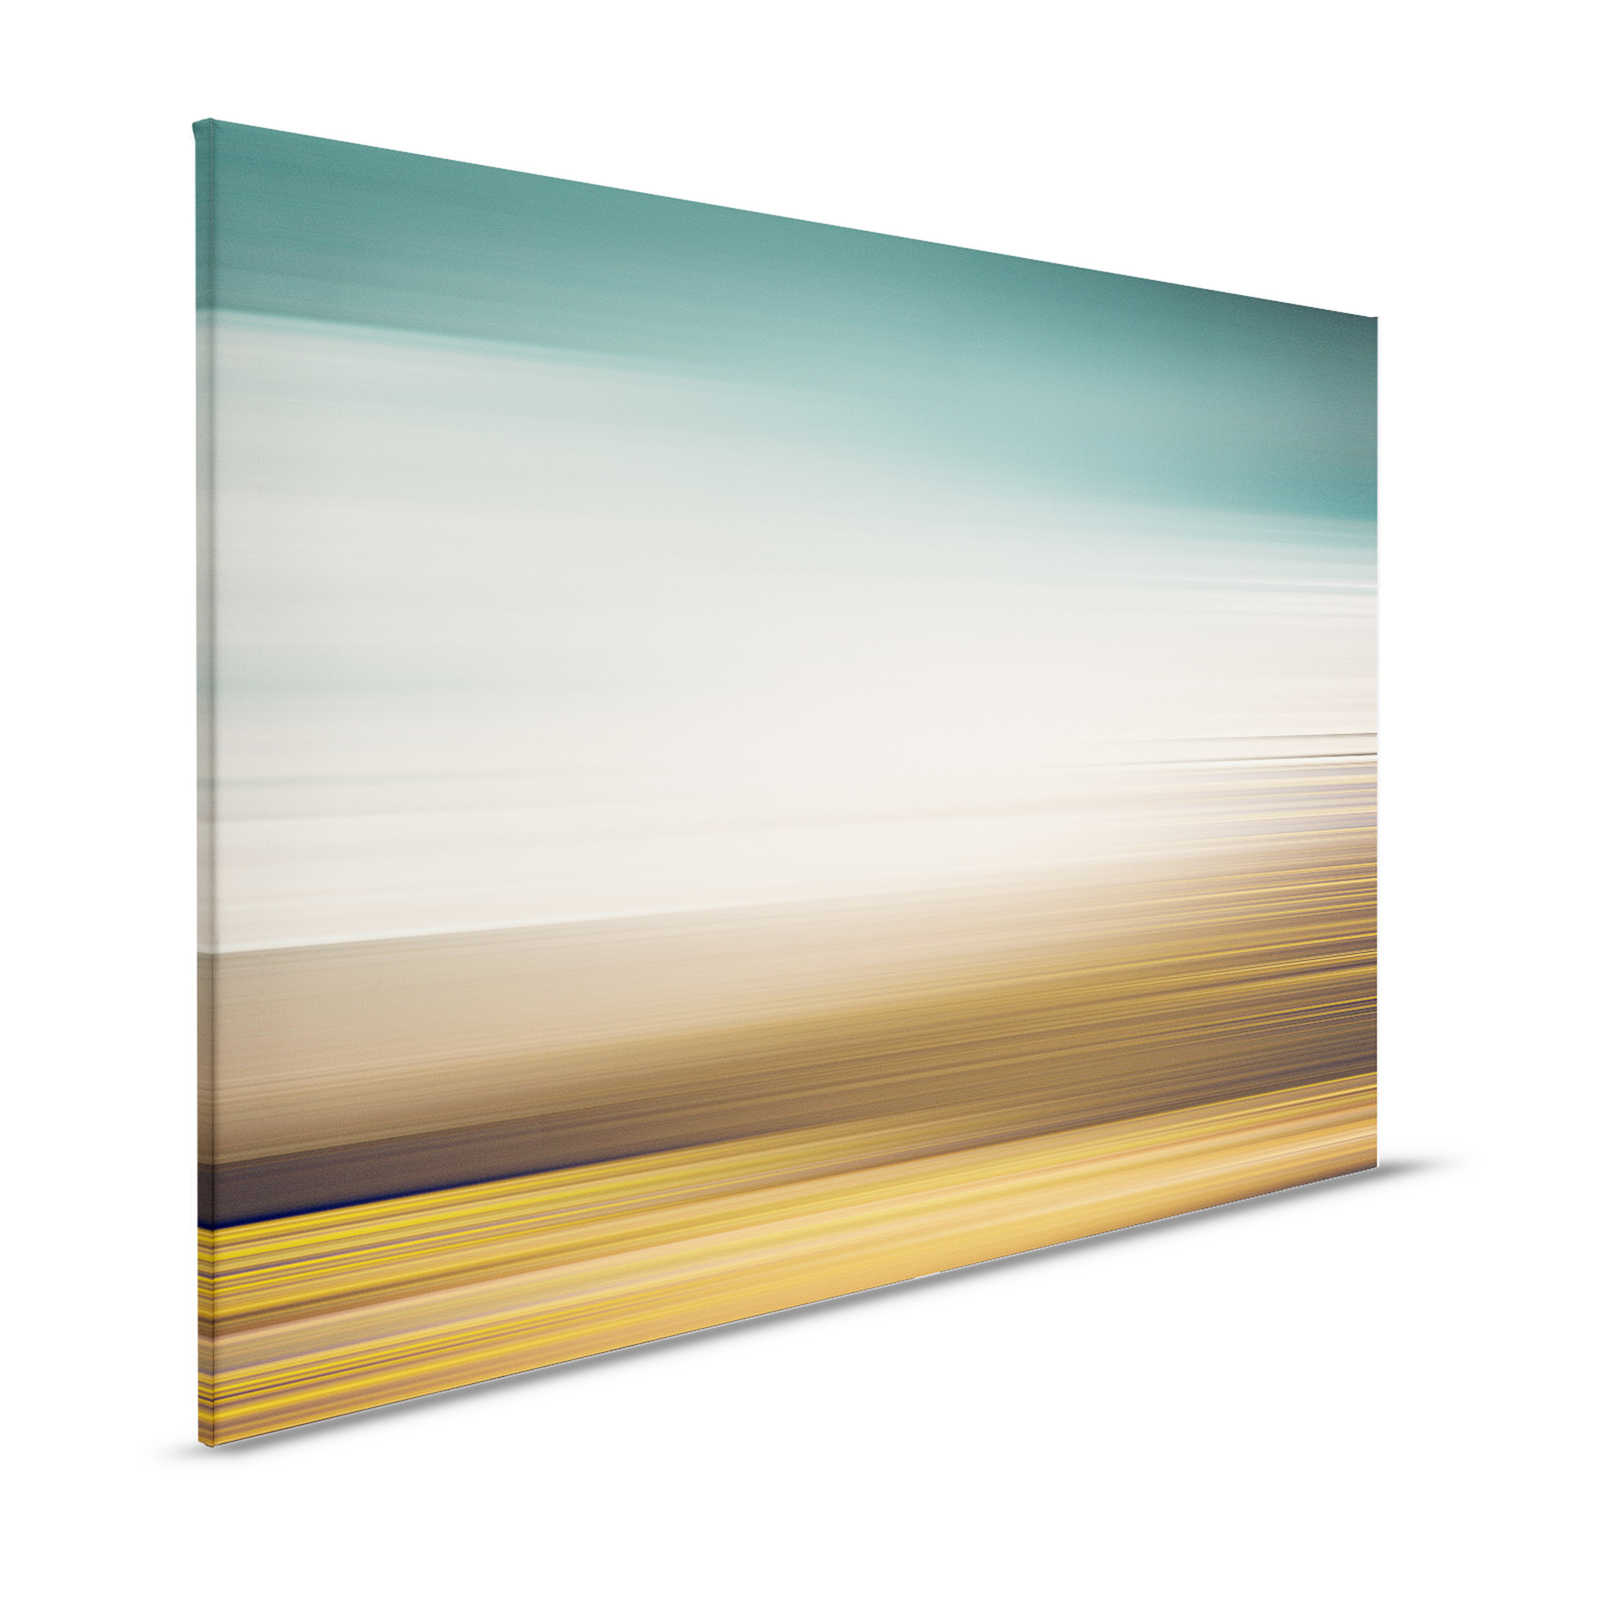 Horizon 3 - Canvas schilderij Landschap abstract met kleurontwerp - 1,20 m x 0,80 m
